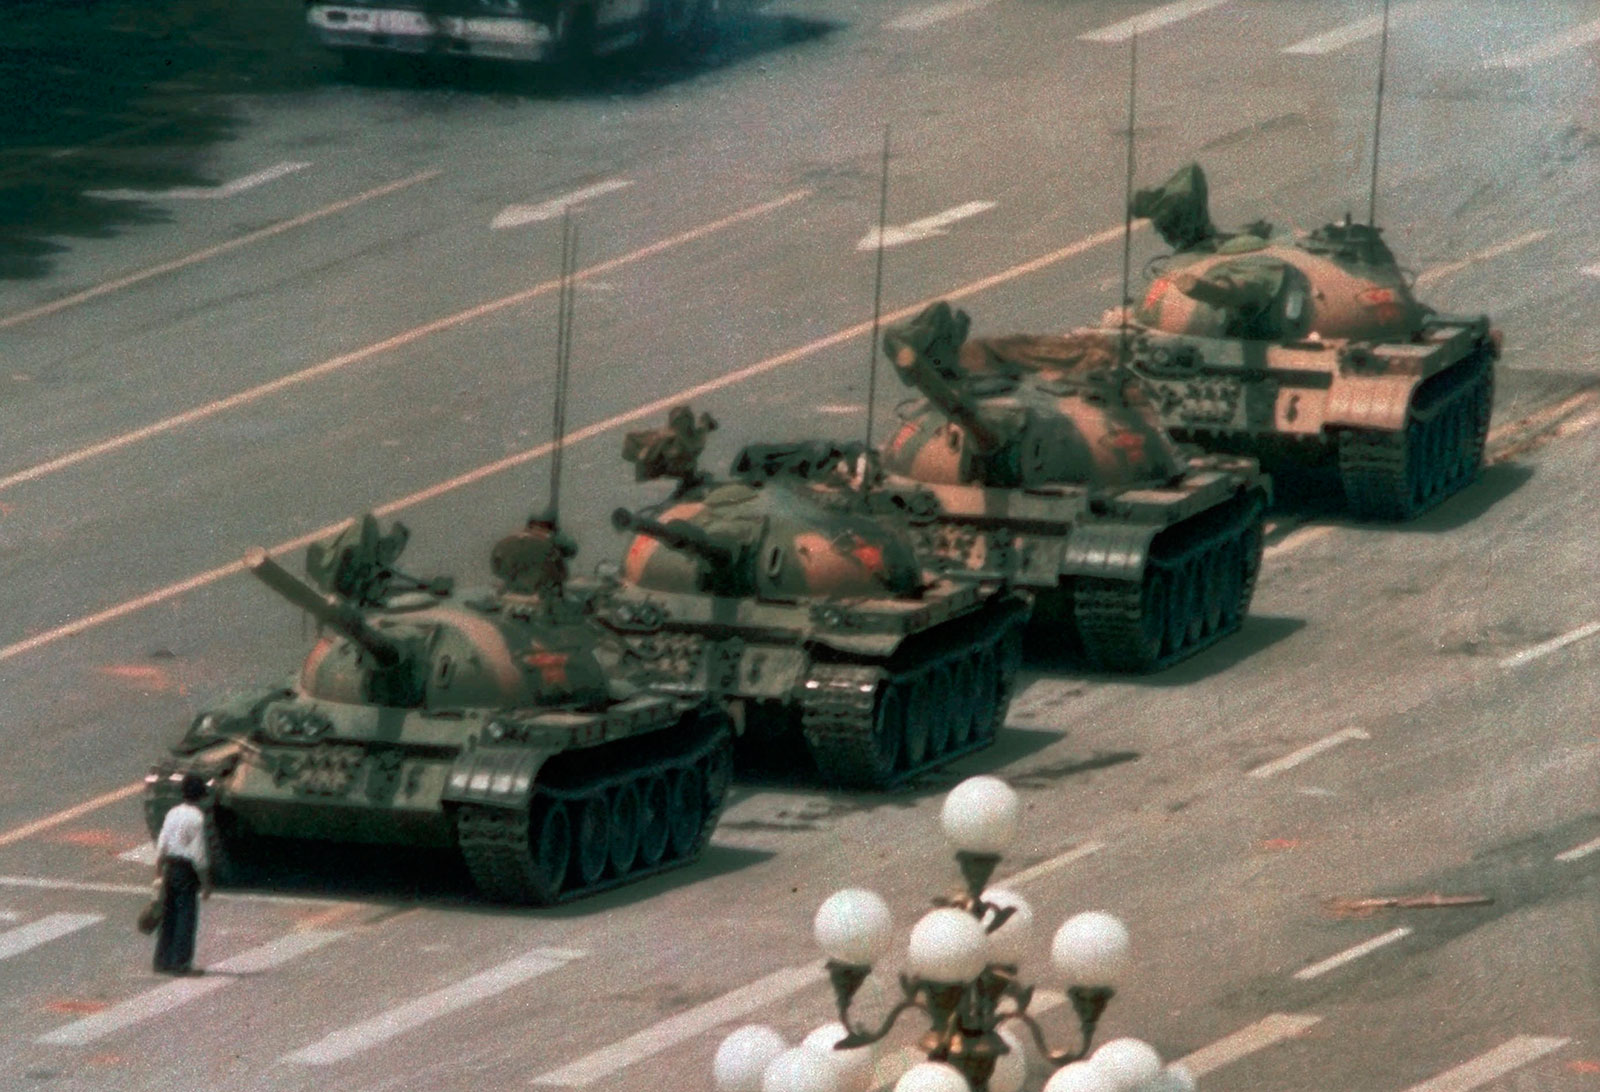 Press Release: WUC Commemorates Tiananmen Square Democracy Protesters on the 30th Anniversary of the Tiananmen Massacre